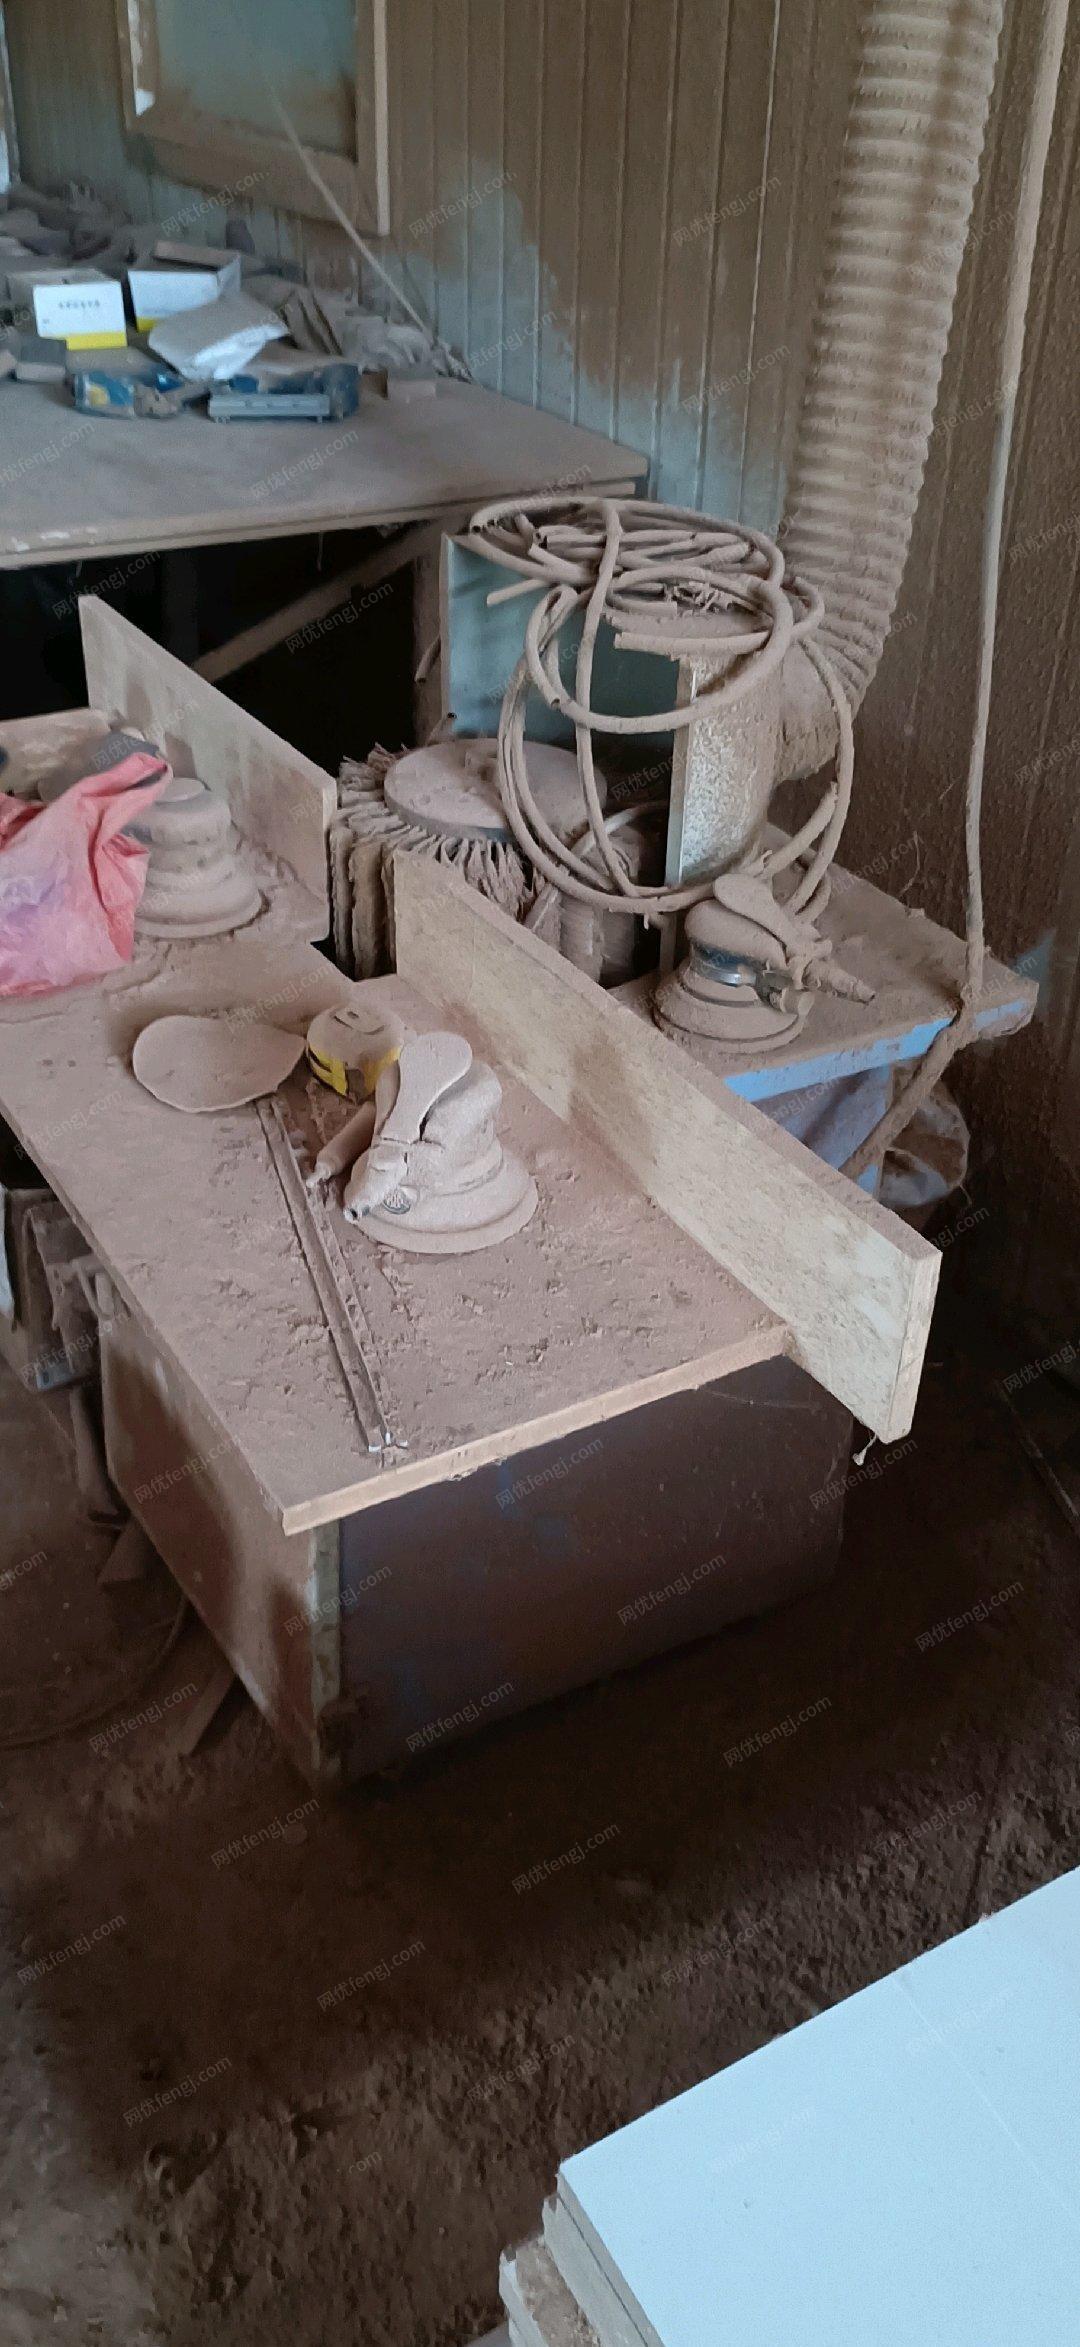 广西玉林出售木工机械 吸塑机 雕刻机 砂光机